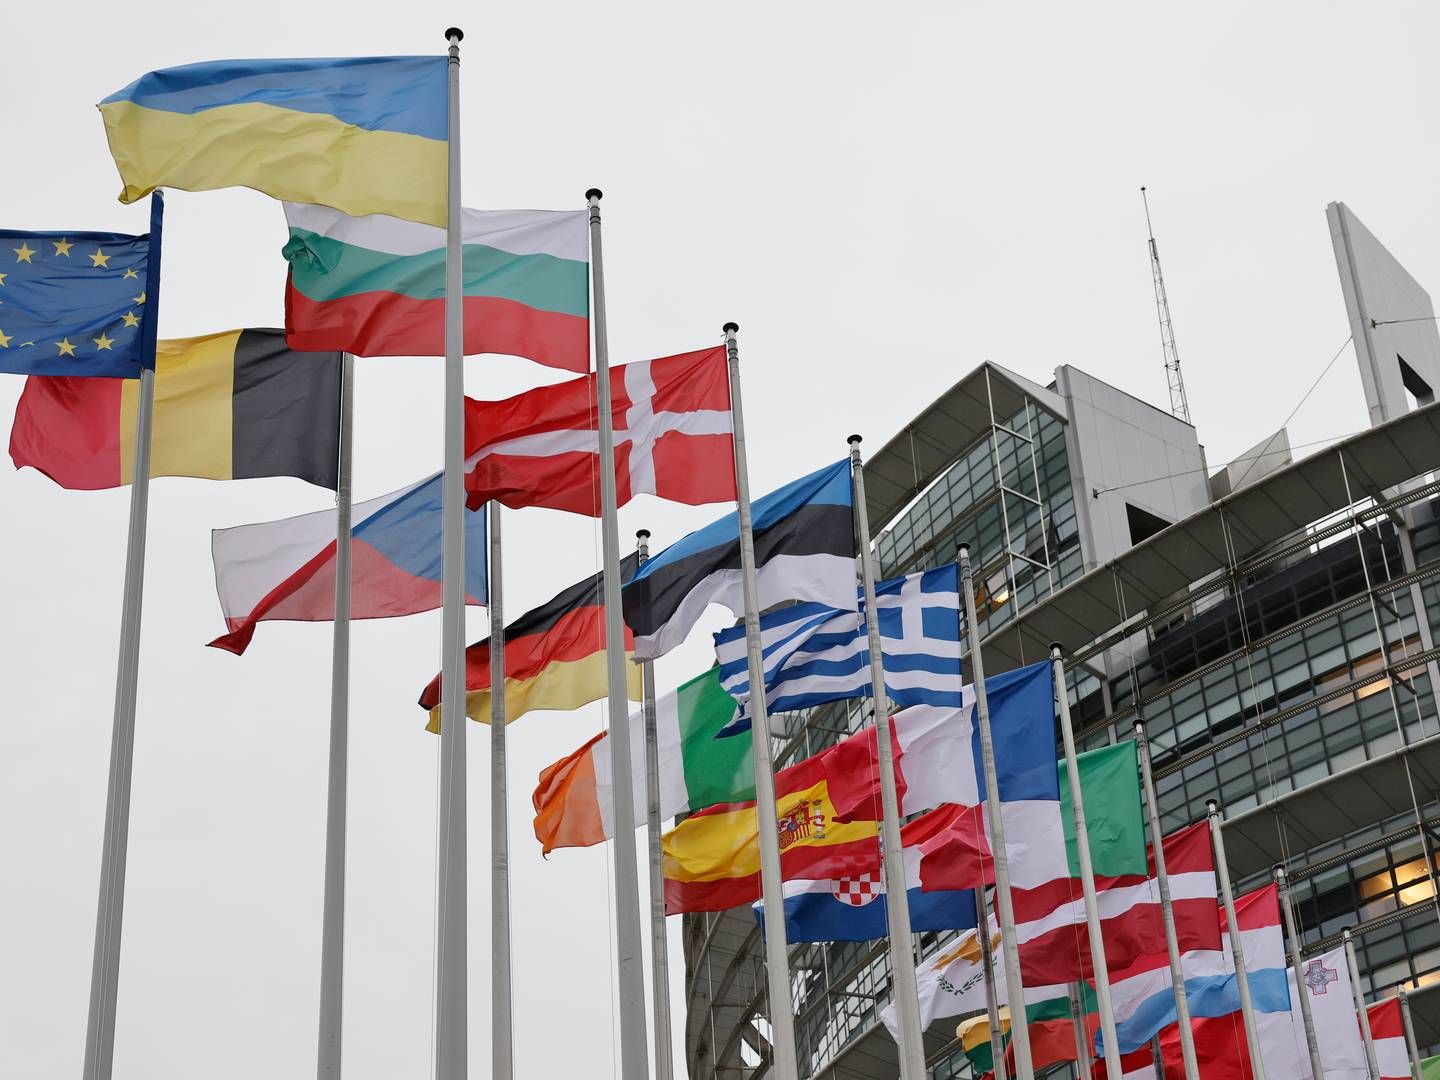 FREMSKYNDER ELMARKEDSREFORM: EU-kommisjonen holder tirsdag sitt ukentlige møte i Strasbourg, hvor EU-parlamentet møtes denne uken, og det er her strømmarkedsreformen skal presenteres. | Foto: Jean-Francois Badias/AP/Ritzau Scanpix